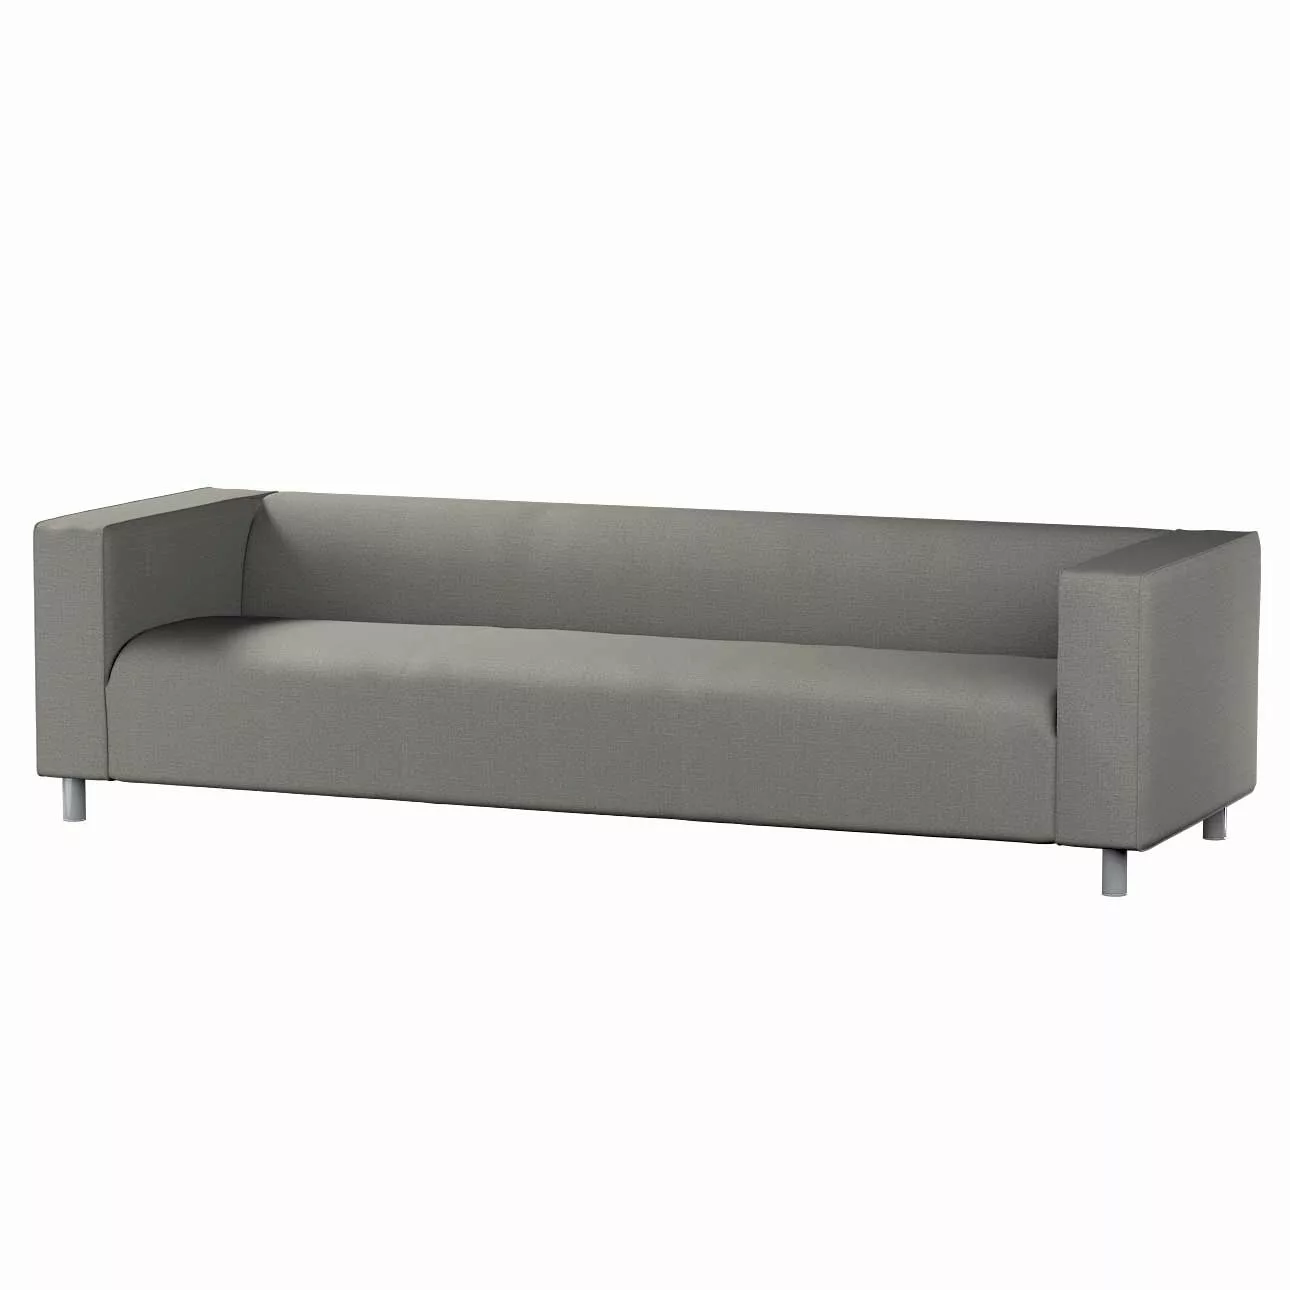 Bezug für Klippan 4-Sitzer Sofa, grau, Bezug für Klippan 4-Sitzer, Living I günstig online kaufen